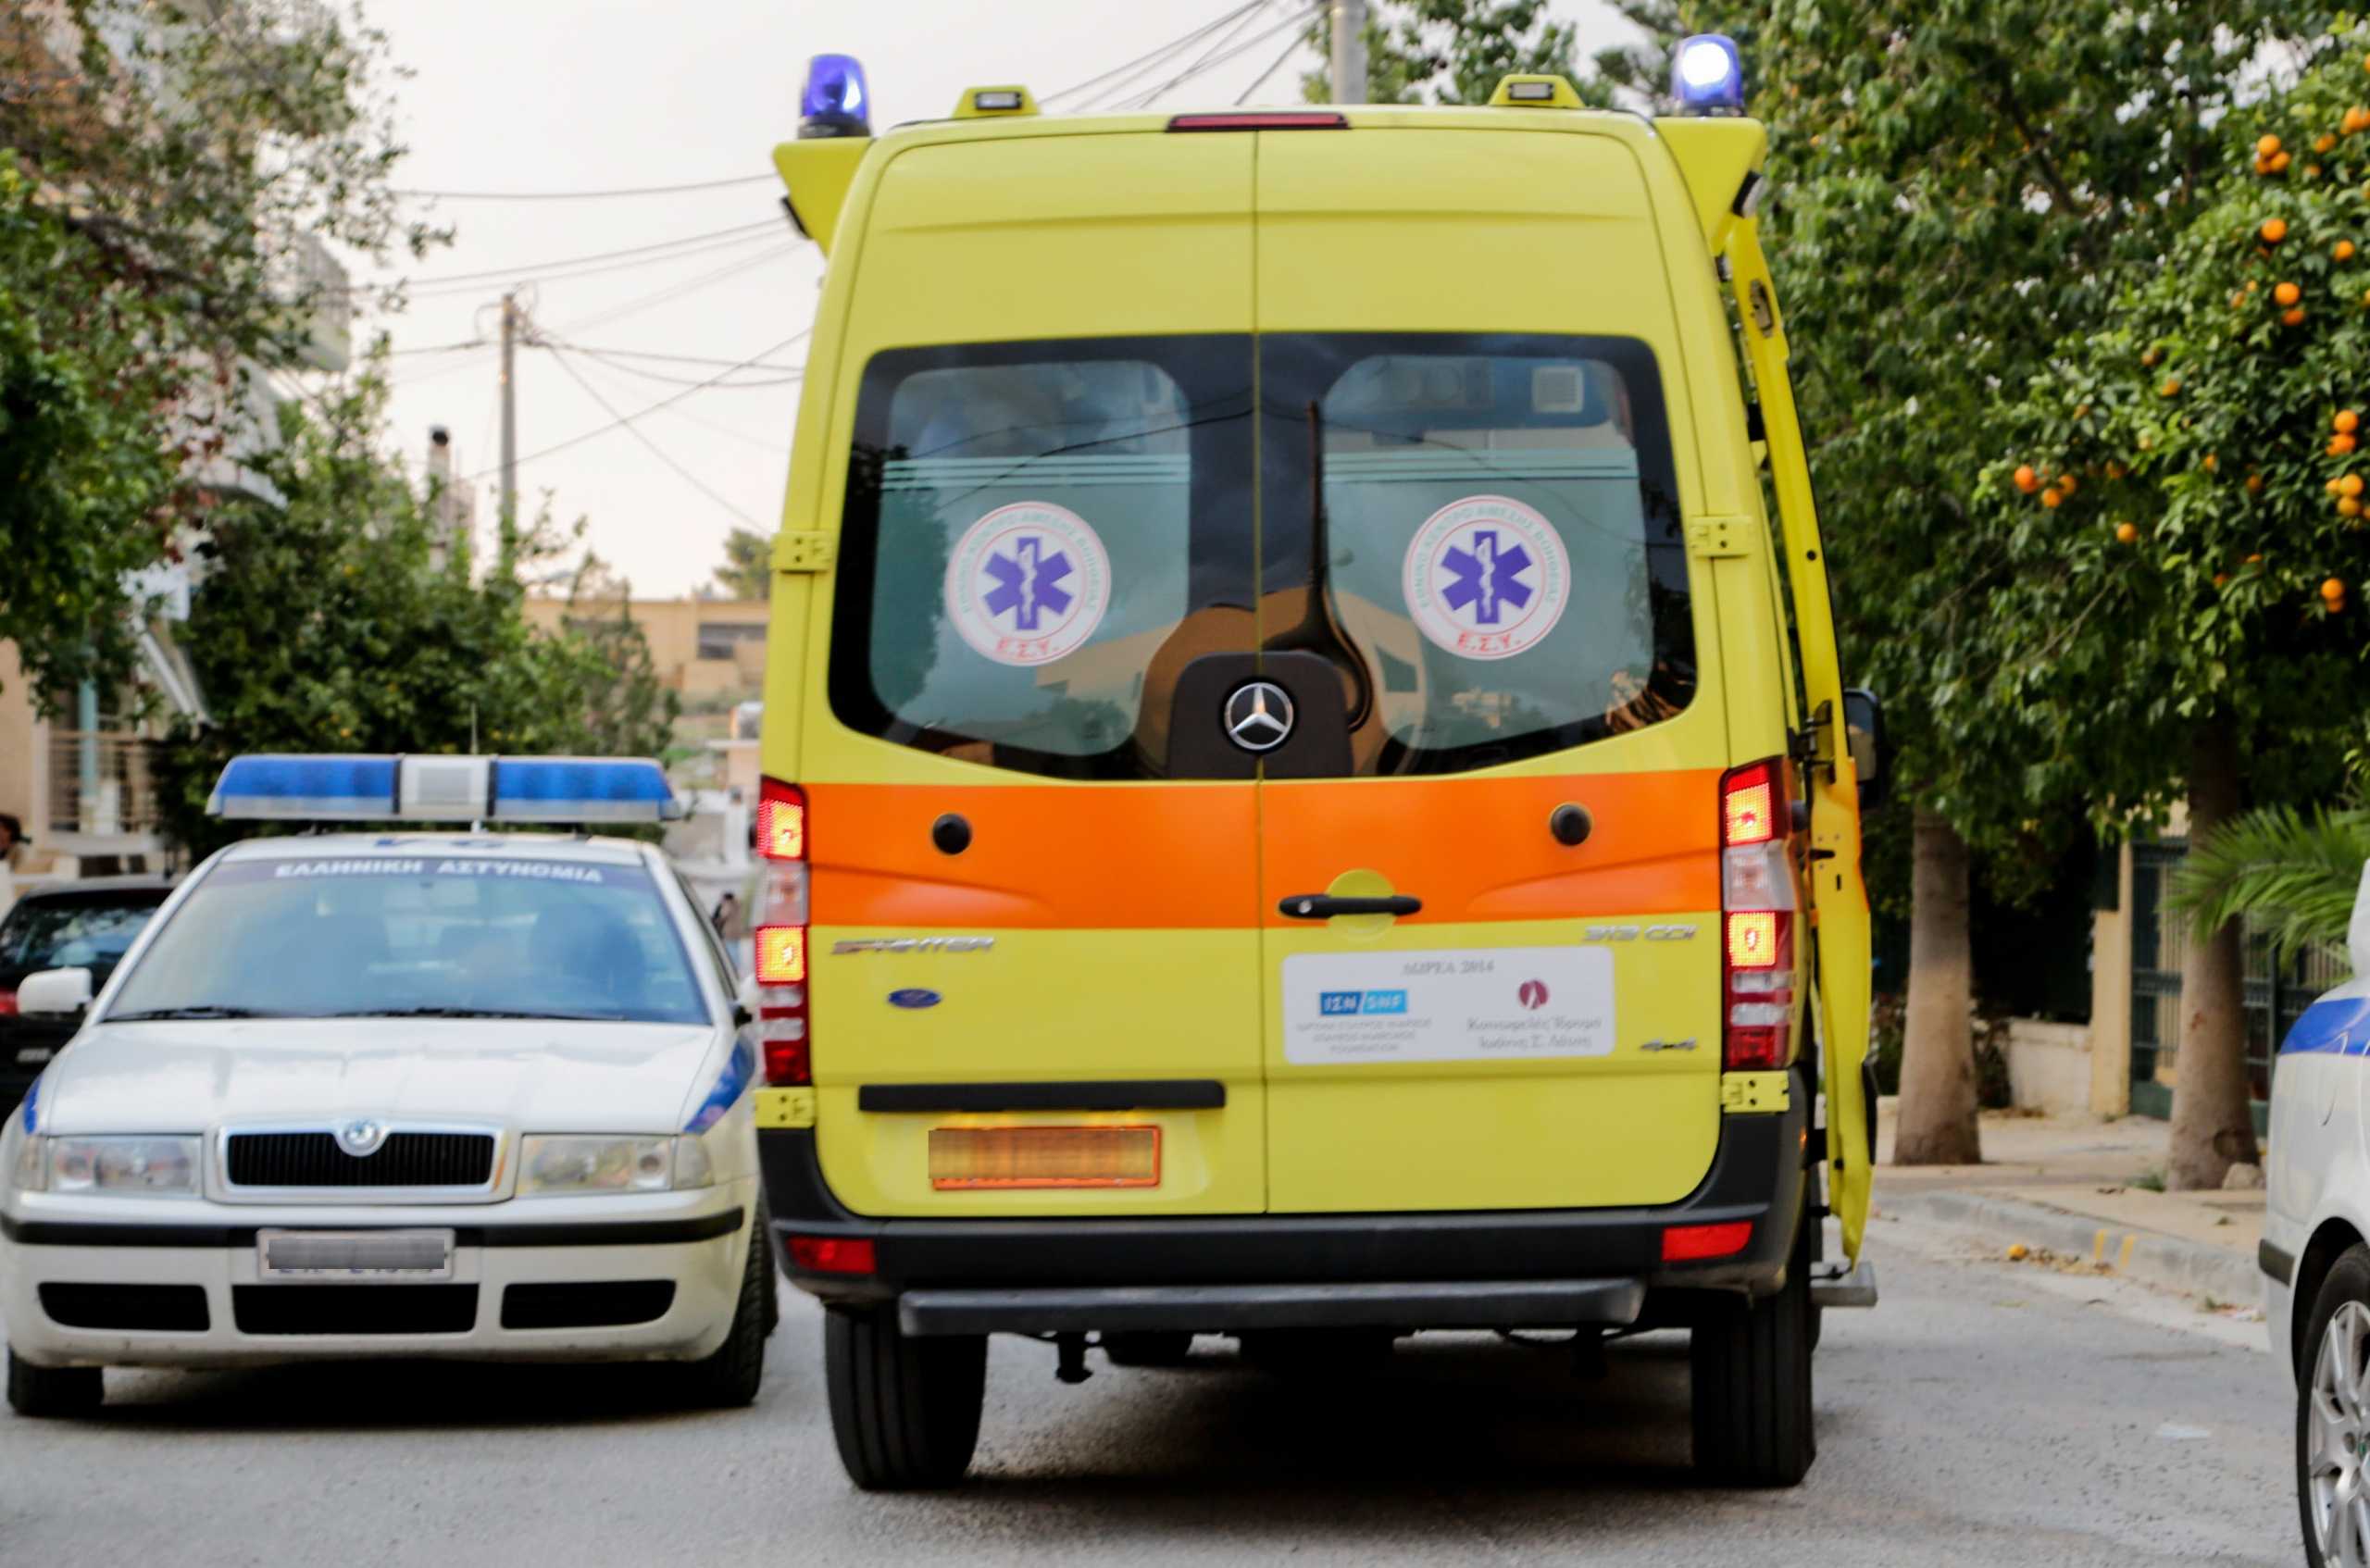 Αλεξανδρούπολη: Τραυματίστηκε σοβαρά κοριτσάκι 2 ετών που έπεσε από τον 4ο όροφο πολυκατοικίας